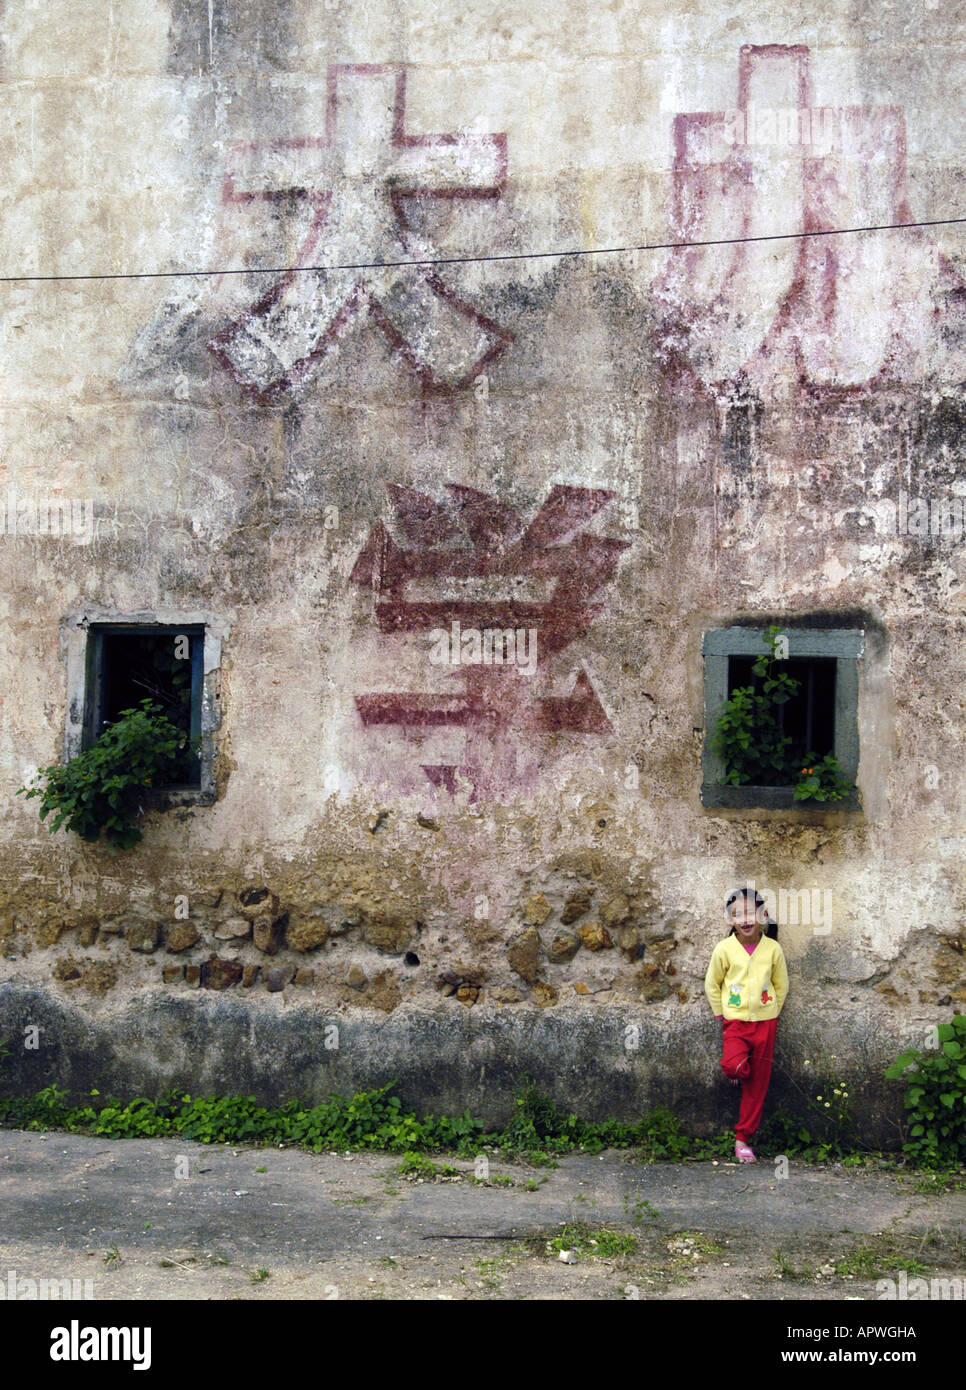 Révolution Culturelle vieux slogans peints sur les murs du village fortifié Hakka traditionnels dans Guangdong Chine Banque D'Images